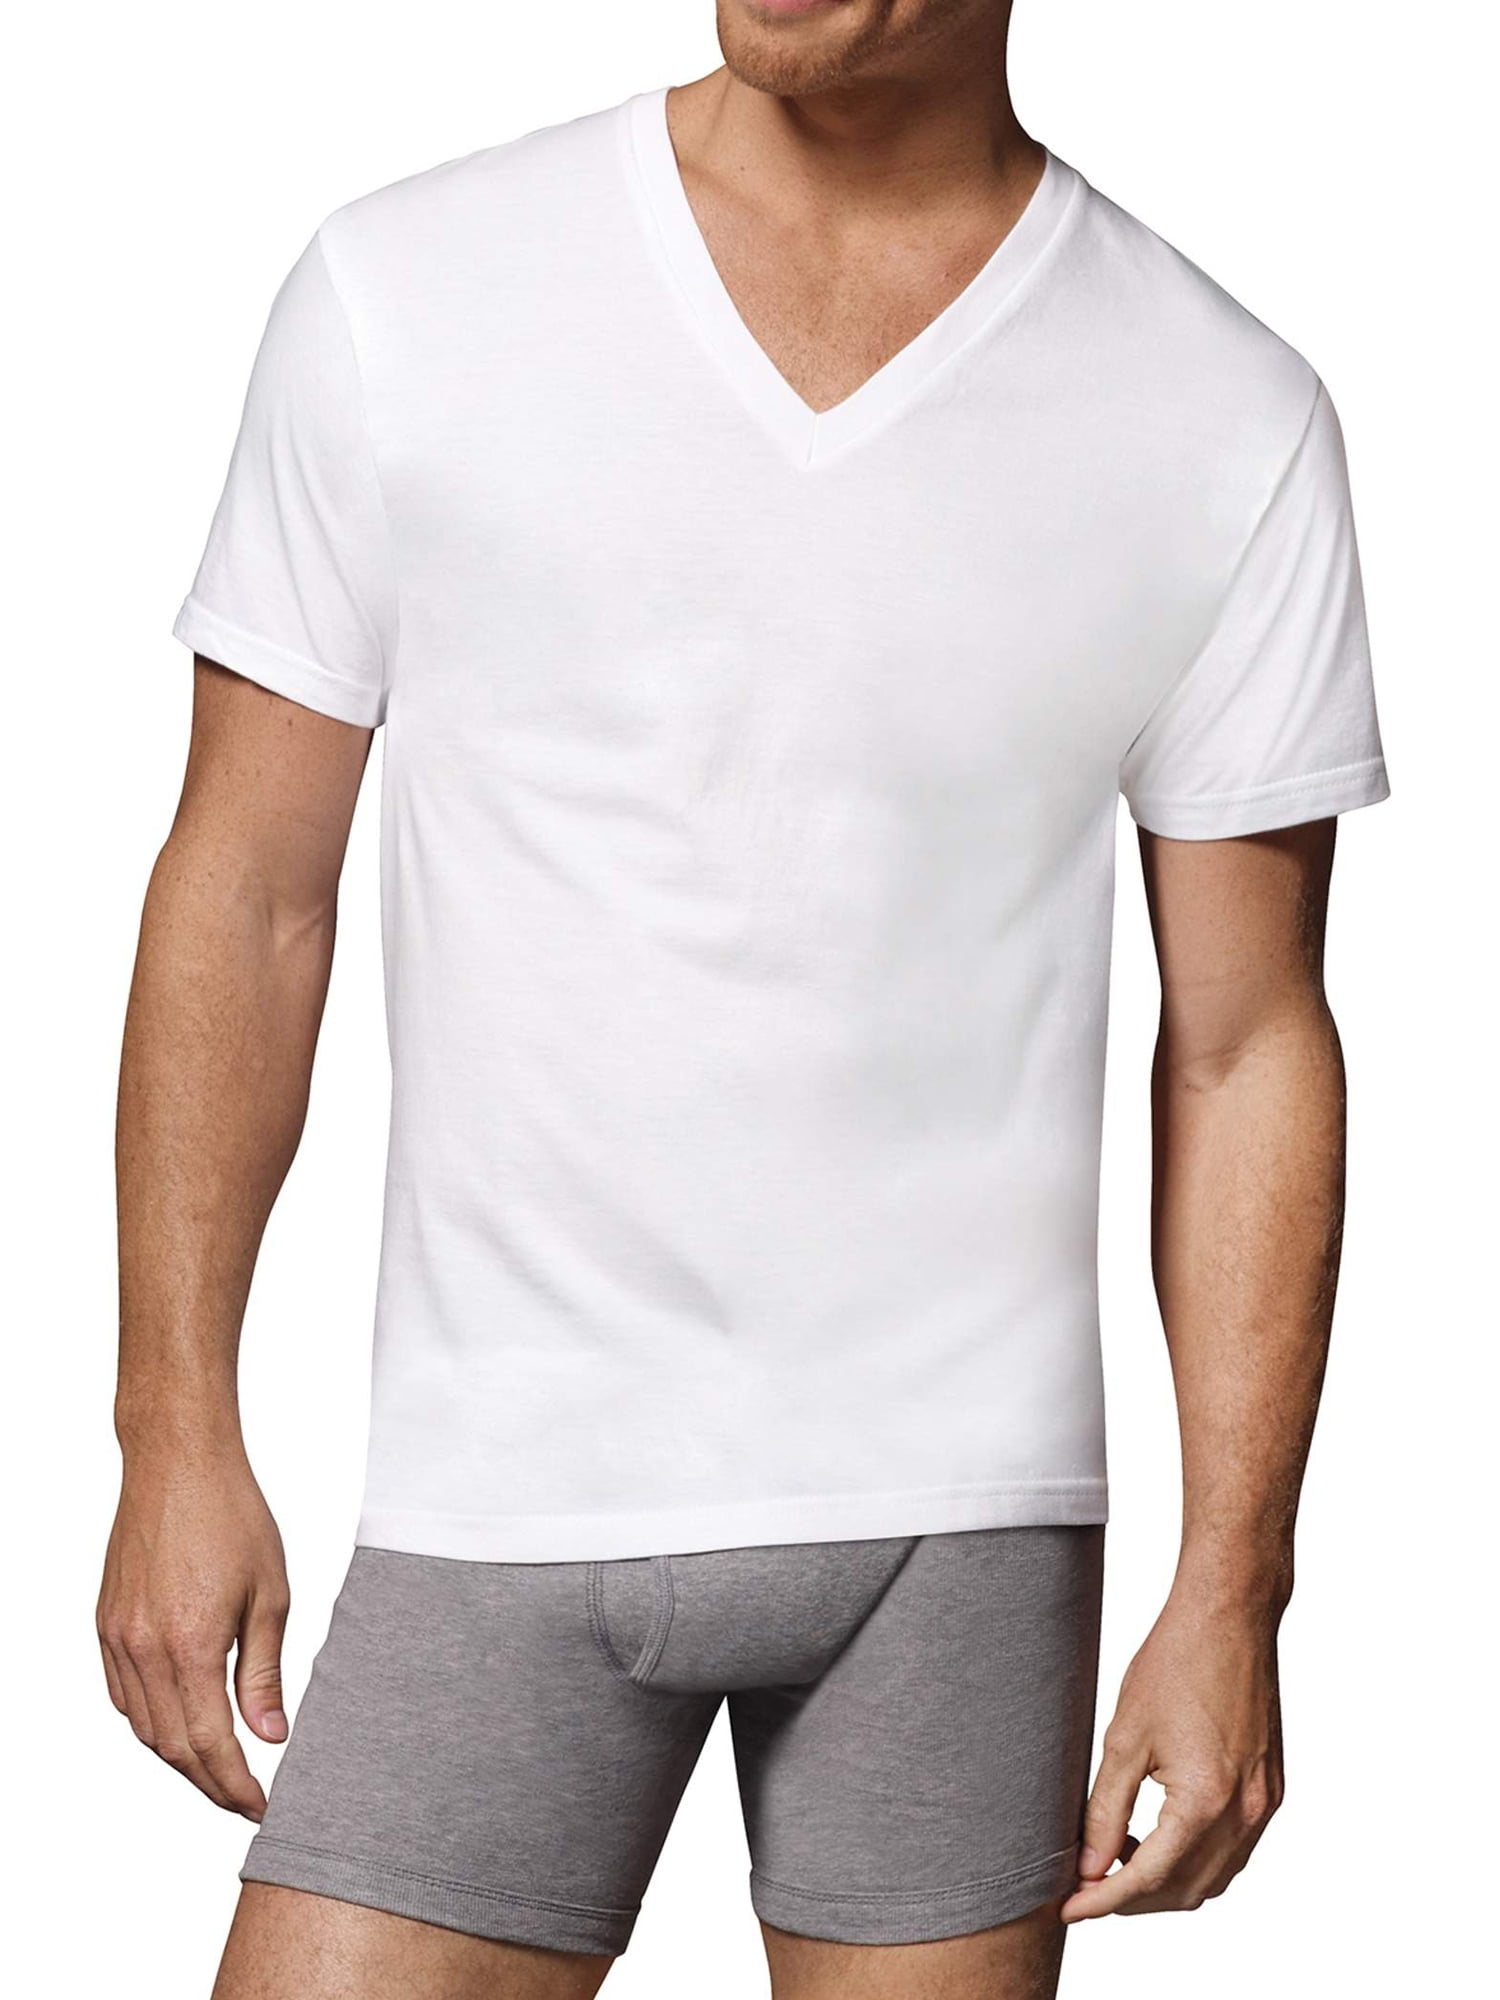 Hanes - Hanes Men's FreshIQ Comfortsoft White V-Neck T-Shirts, 6 Pack